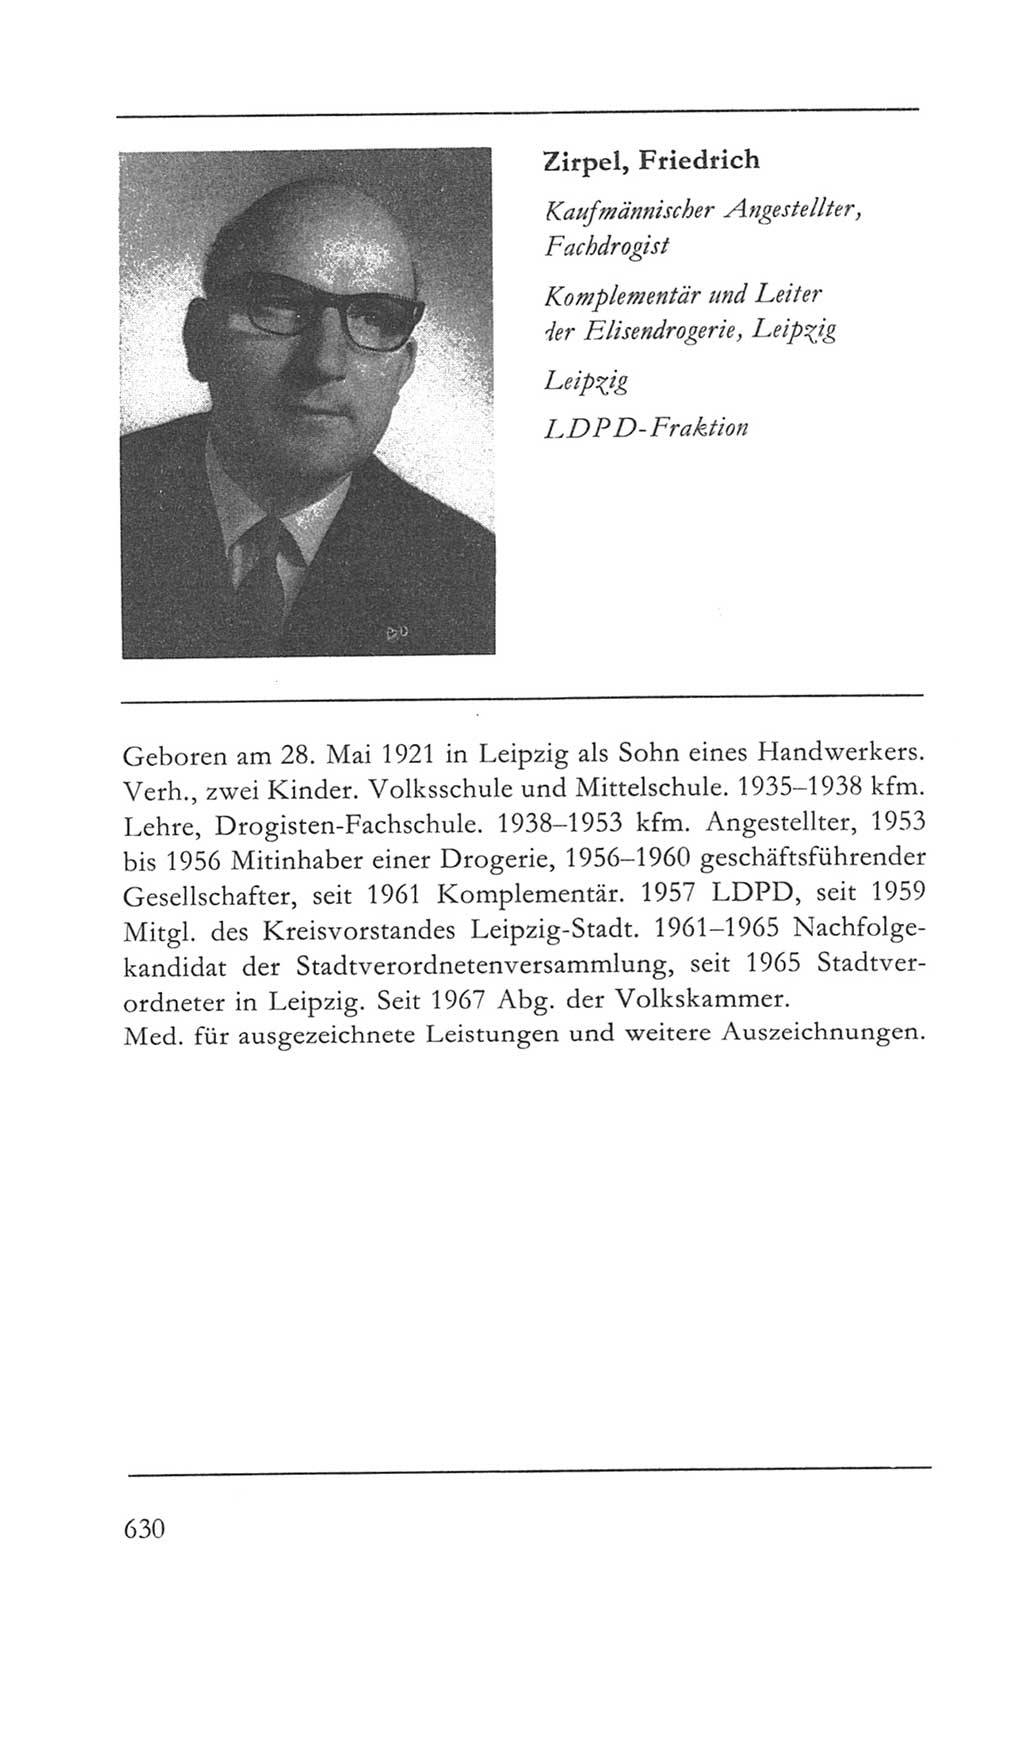 Volkskammer (VK) der Deutschen Demokratischen Republik (DDR) 5. Wahlperiode 1967-1971, Seite 630 (VK. DDR 5. WP. 1967-1971, S. 630)